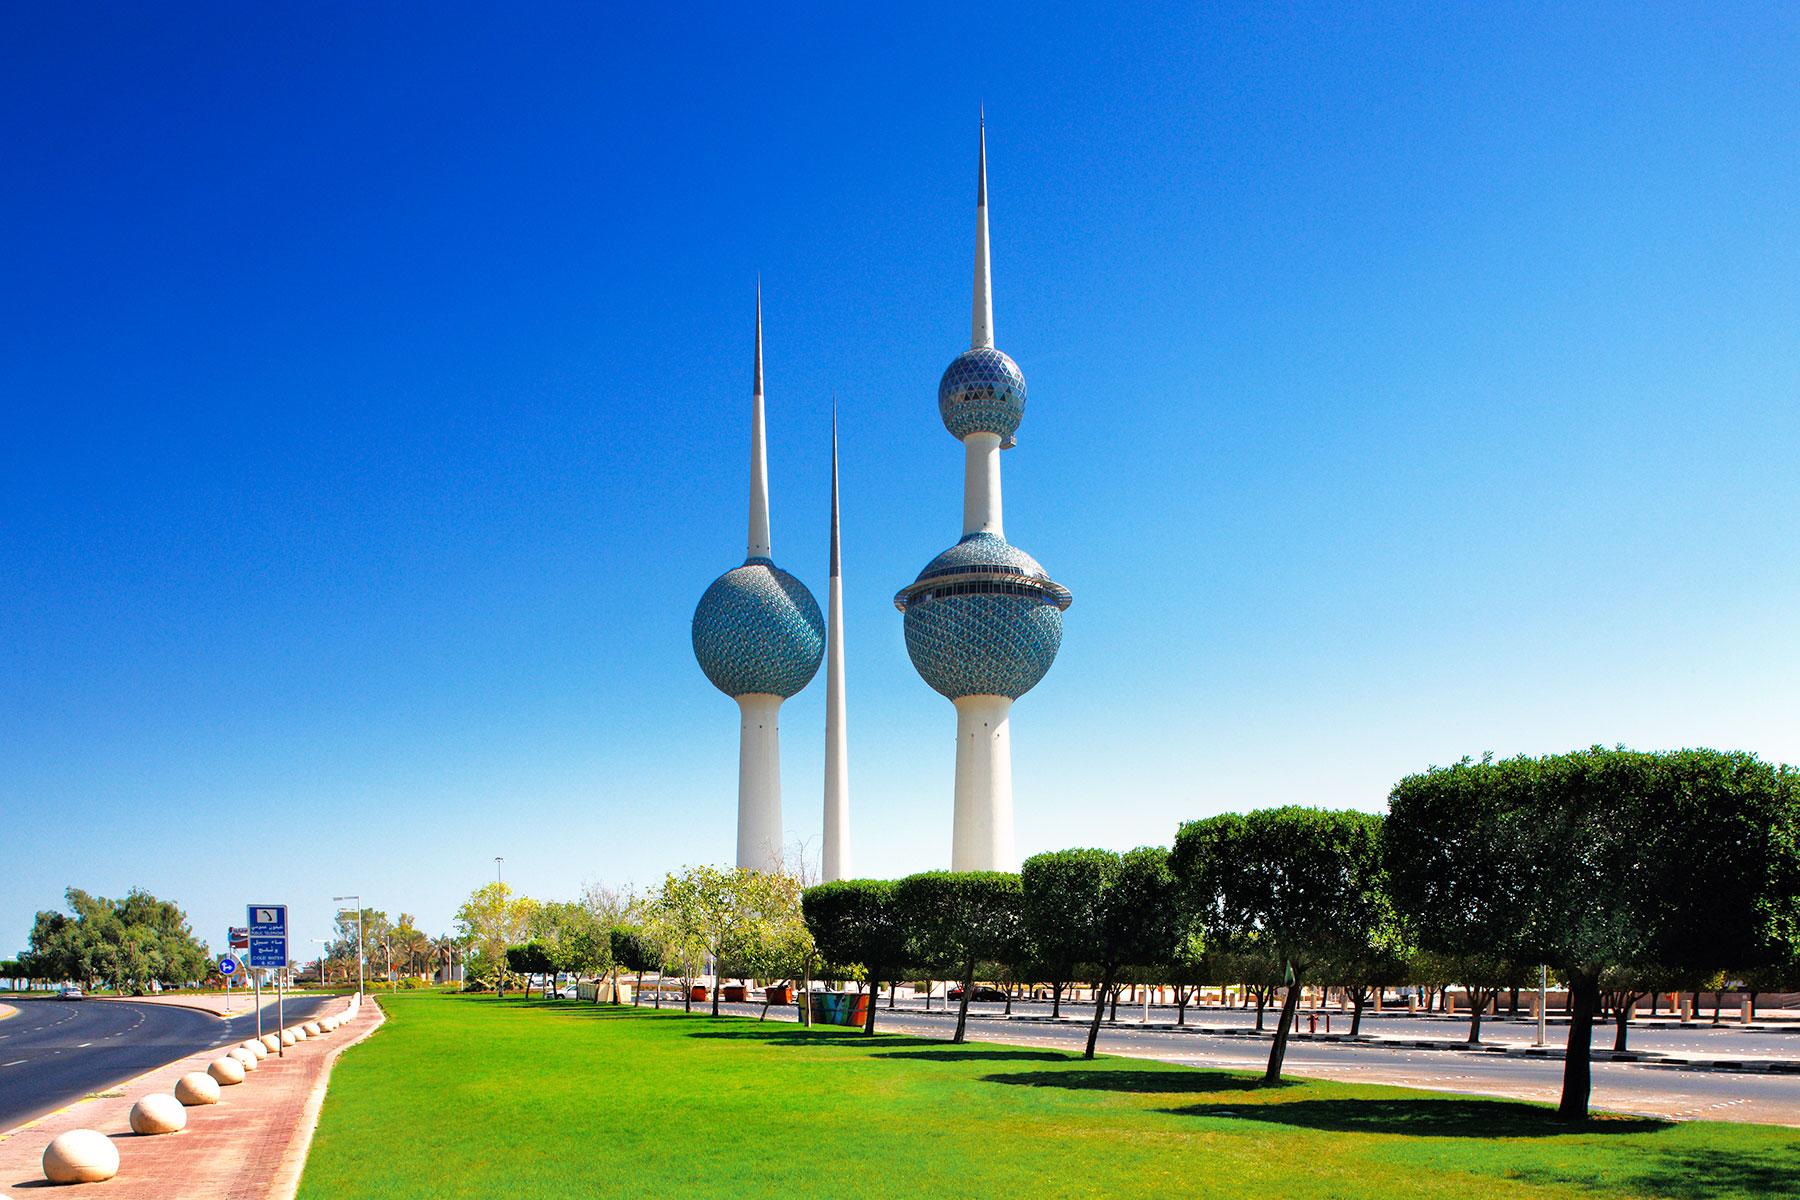 visit kuwait city